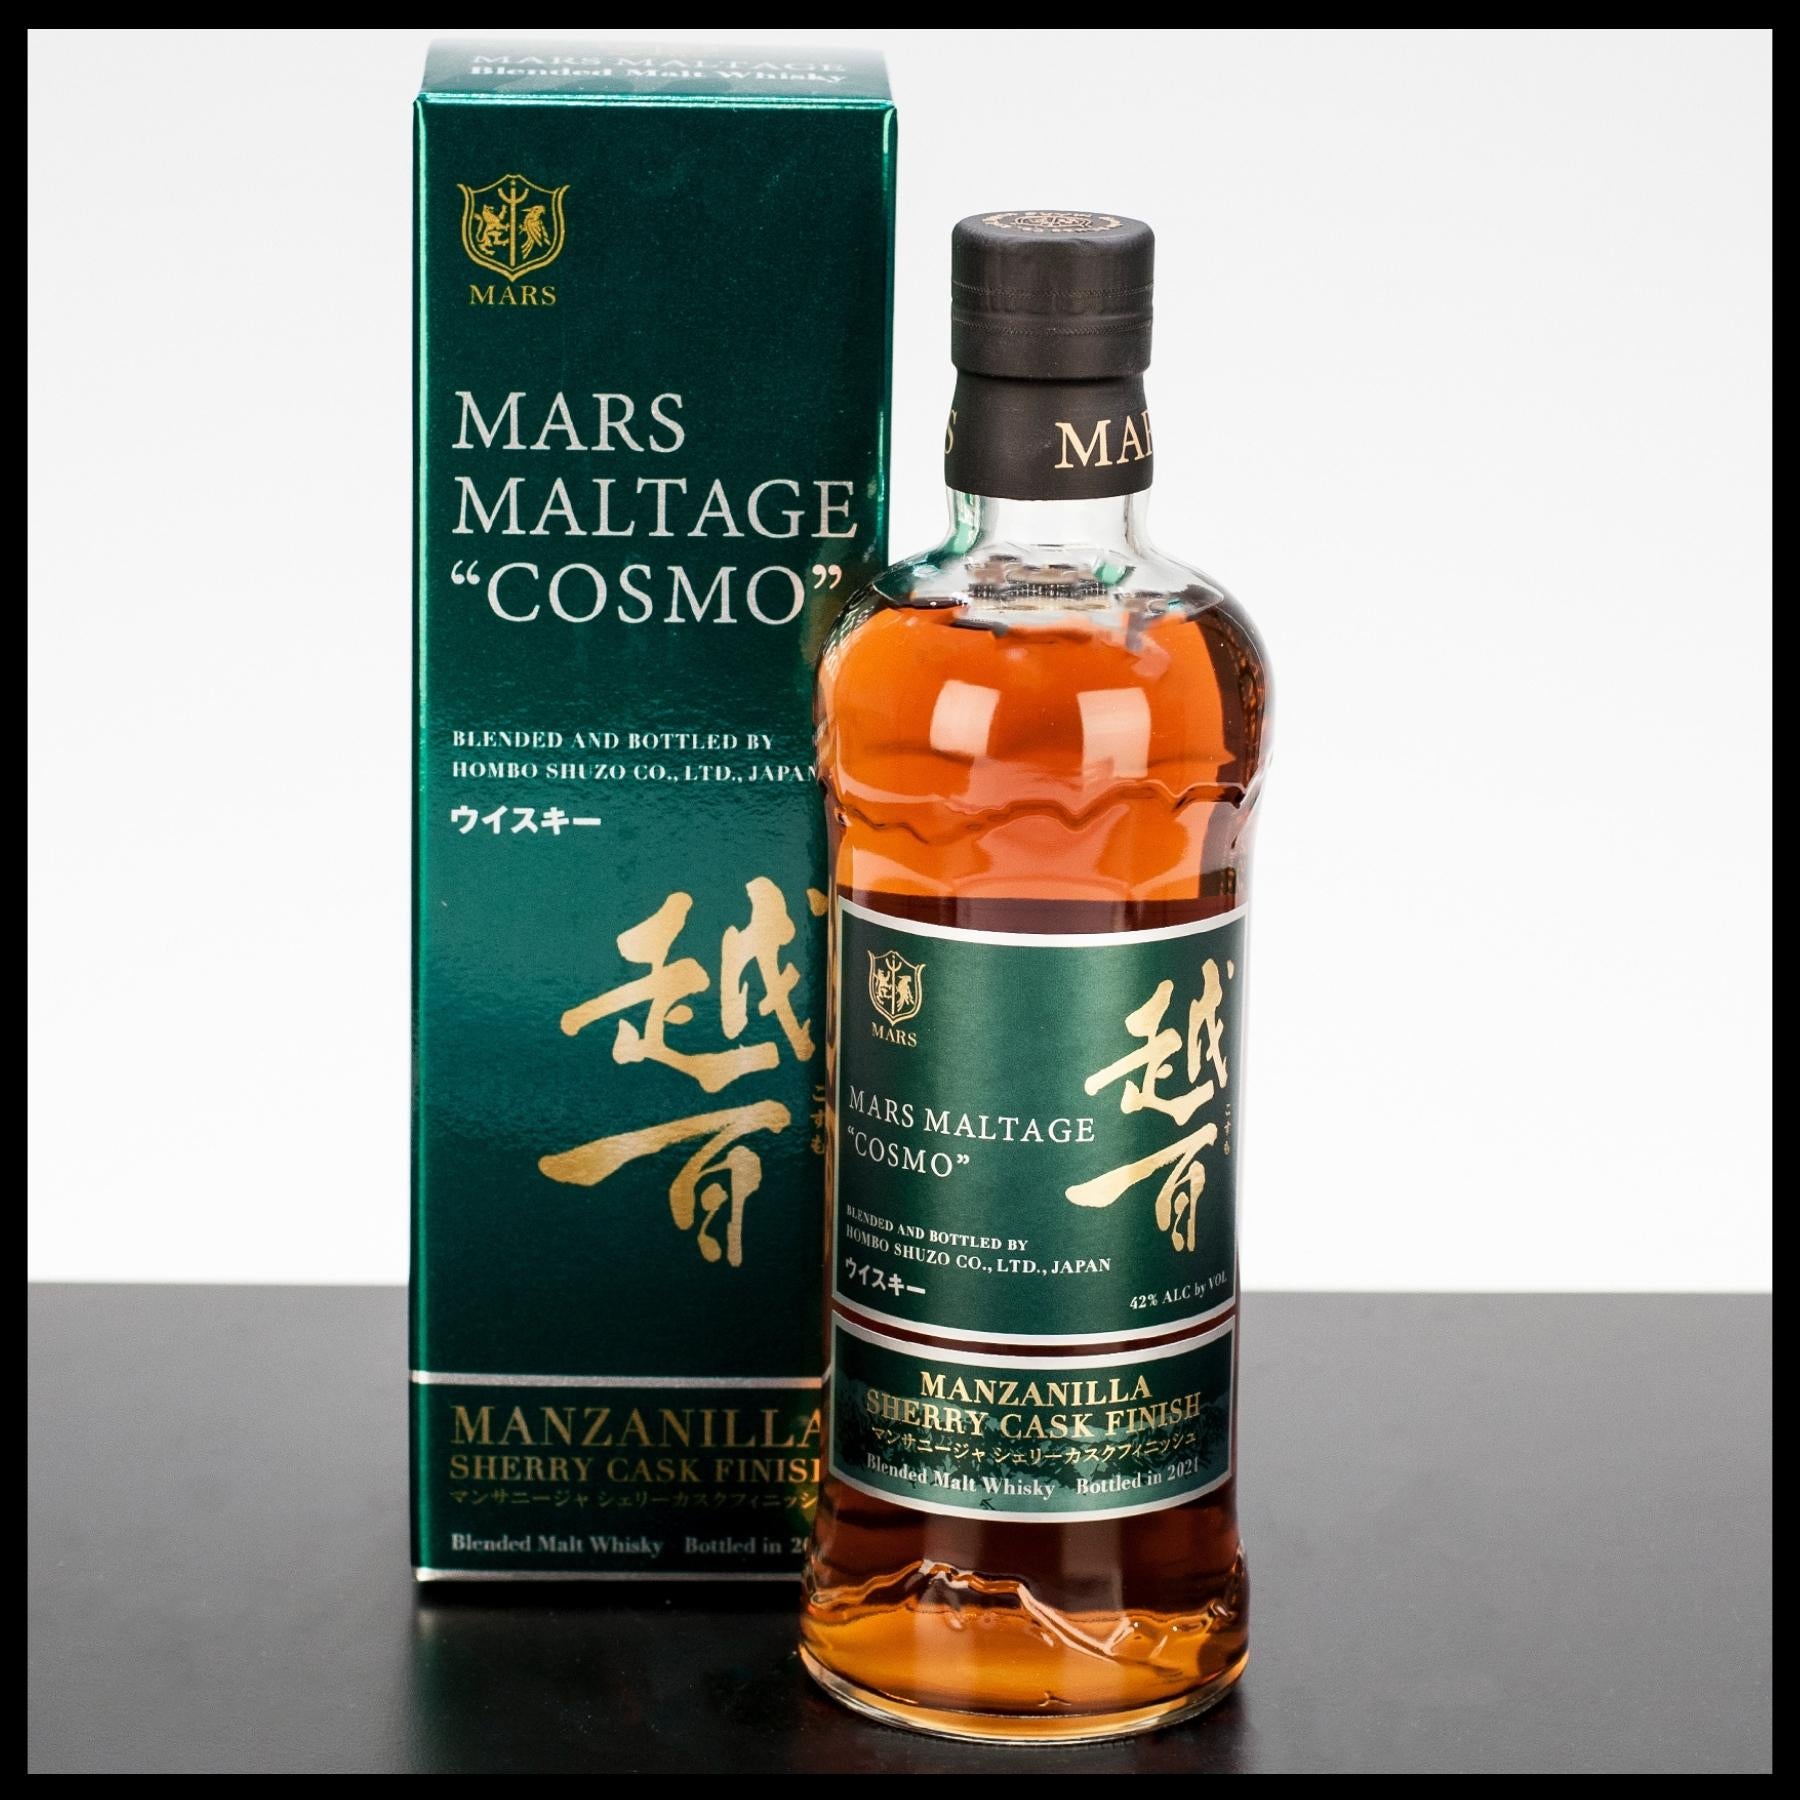 Mars Maltage Cosmo Manzanilla Cask Finish 0,7L - 42% Vol. - Trinklusiv